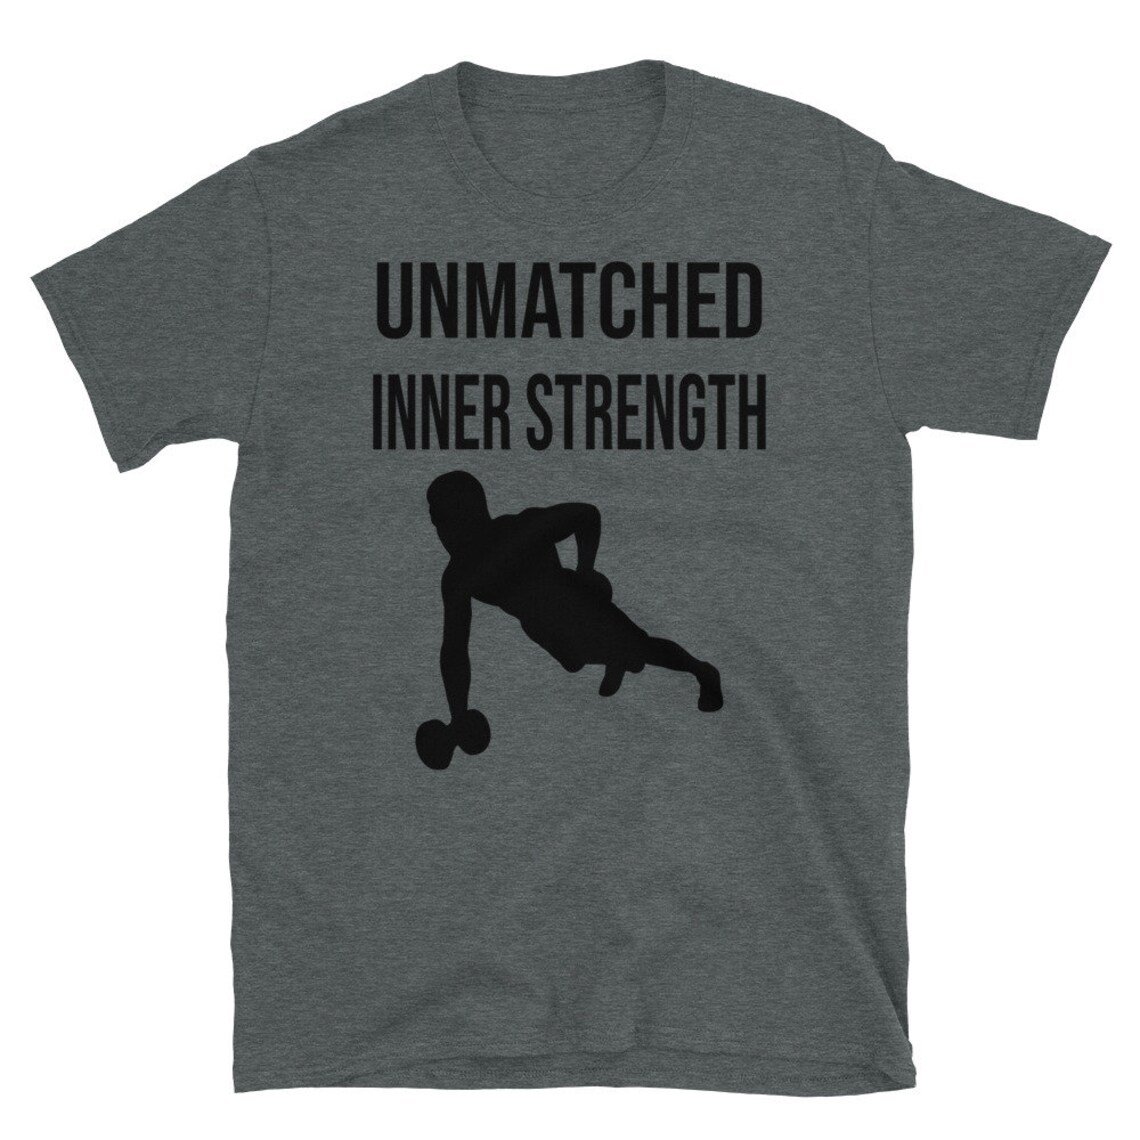 Men's t-shirt inspirational inner strength strength | Etsy